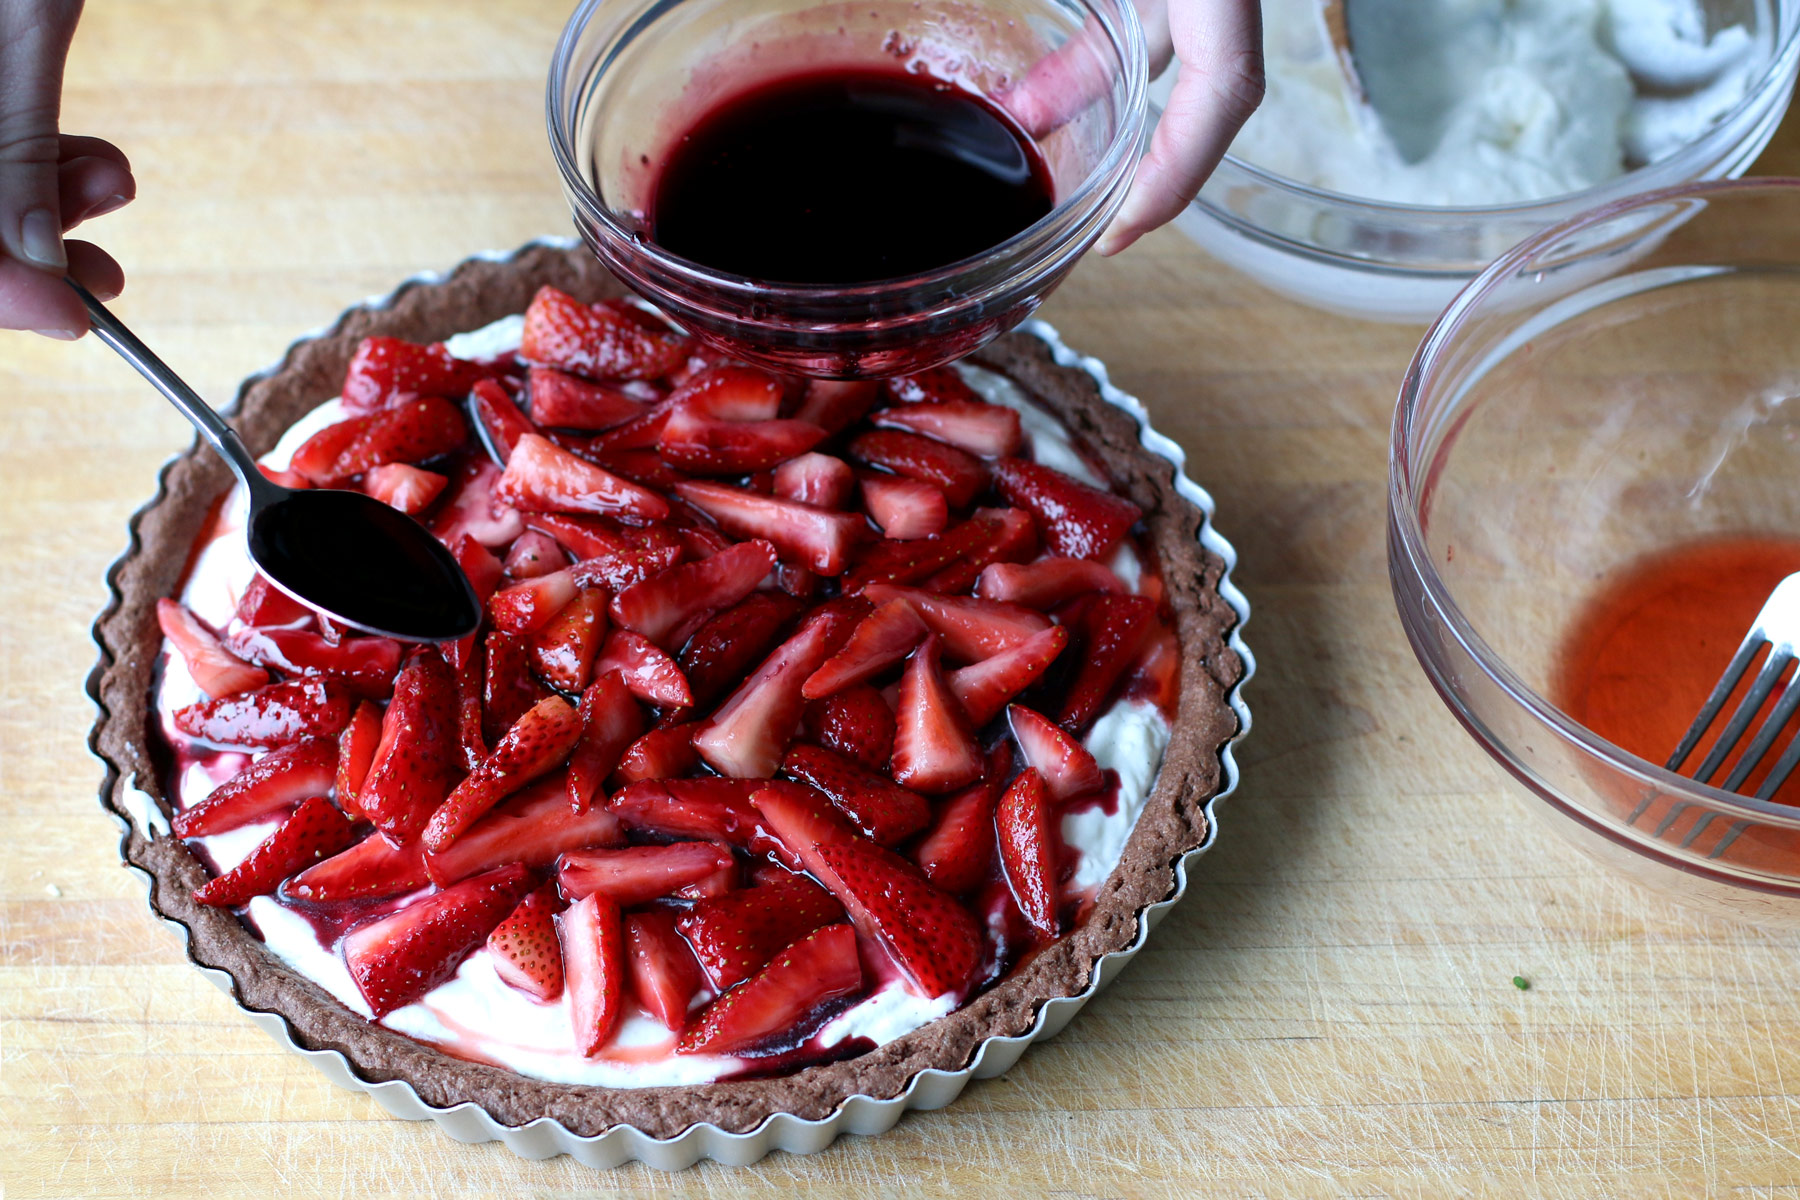 Red Wine and Strawberry Tart